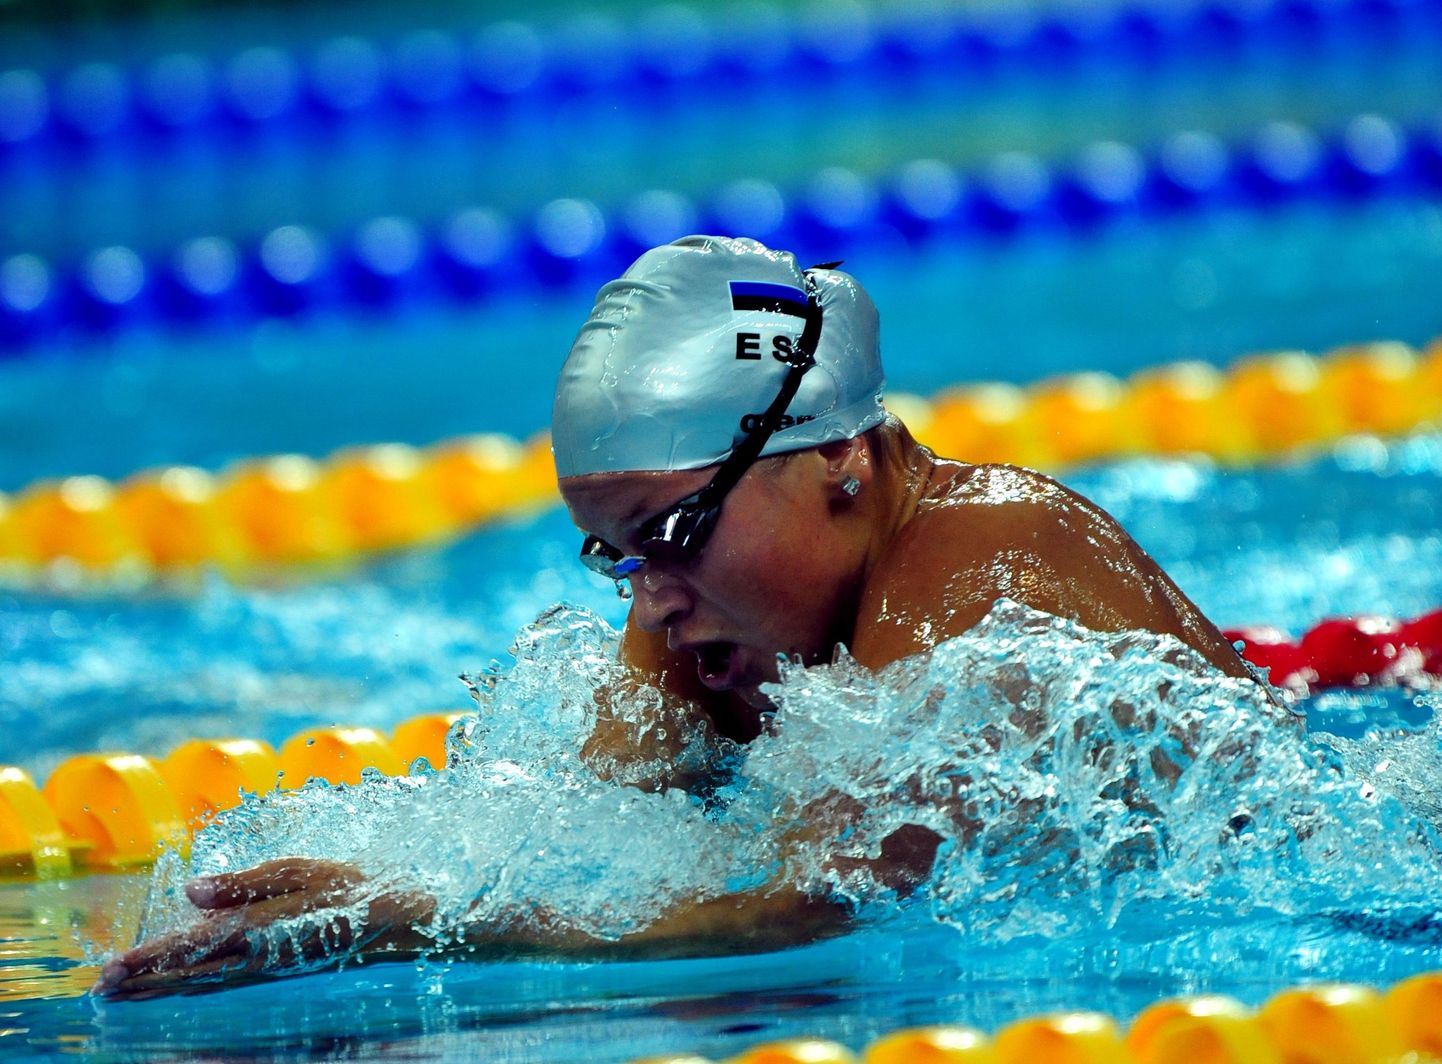 TLNPM08: OLÜMPIA2008  :PEKING,HIINA,09 AUG08.
Anna-Liisa Põld ujumas 400m kompleksi
rp/FOTO RAIGO PAJULA/POSTIMEES